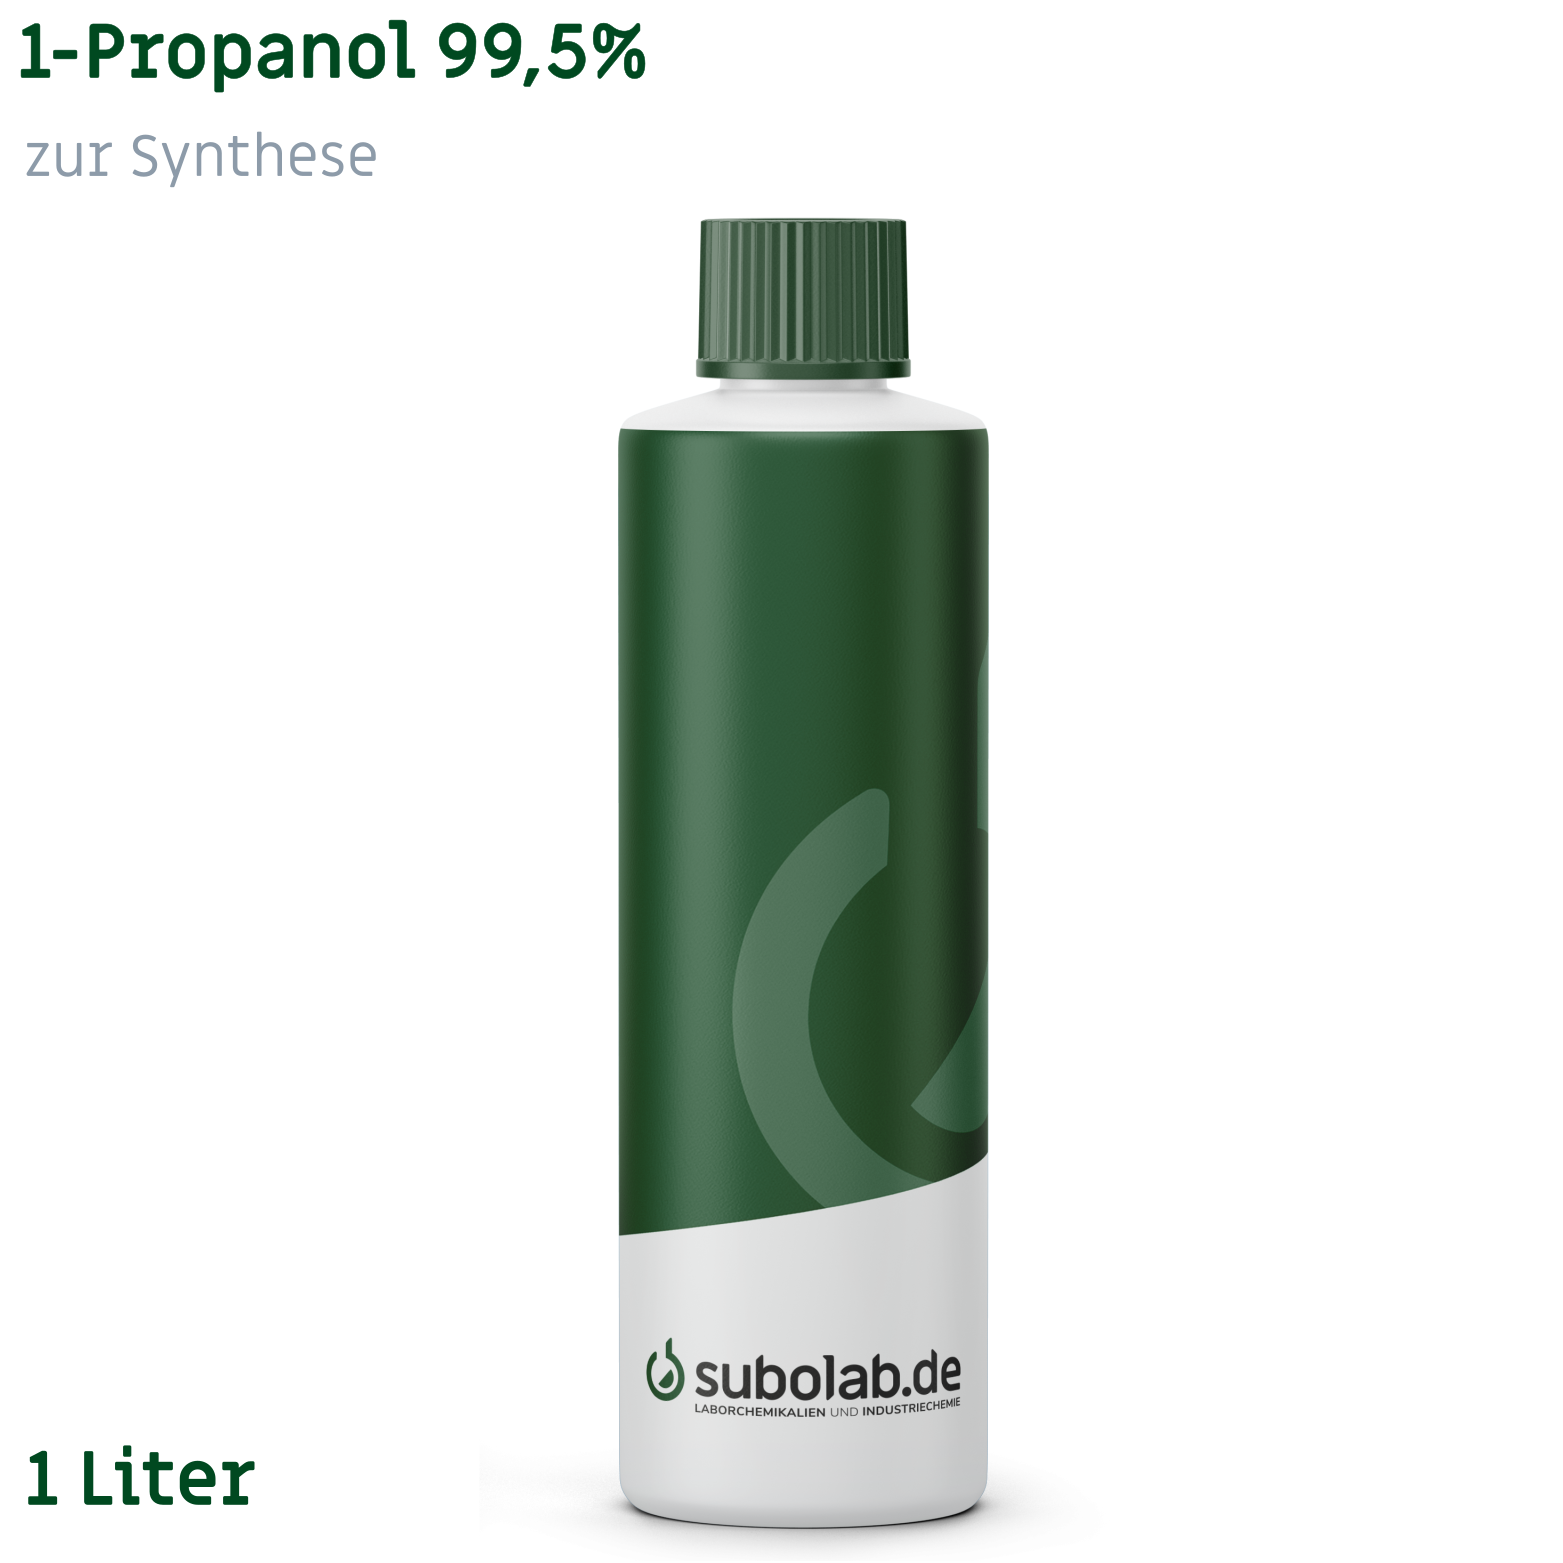 Bild von 1-Propanol 99,5% zur Synthese (1 Liter)